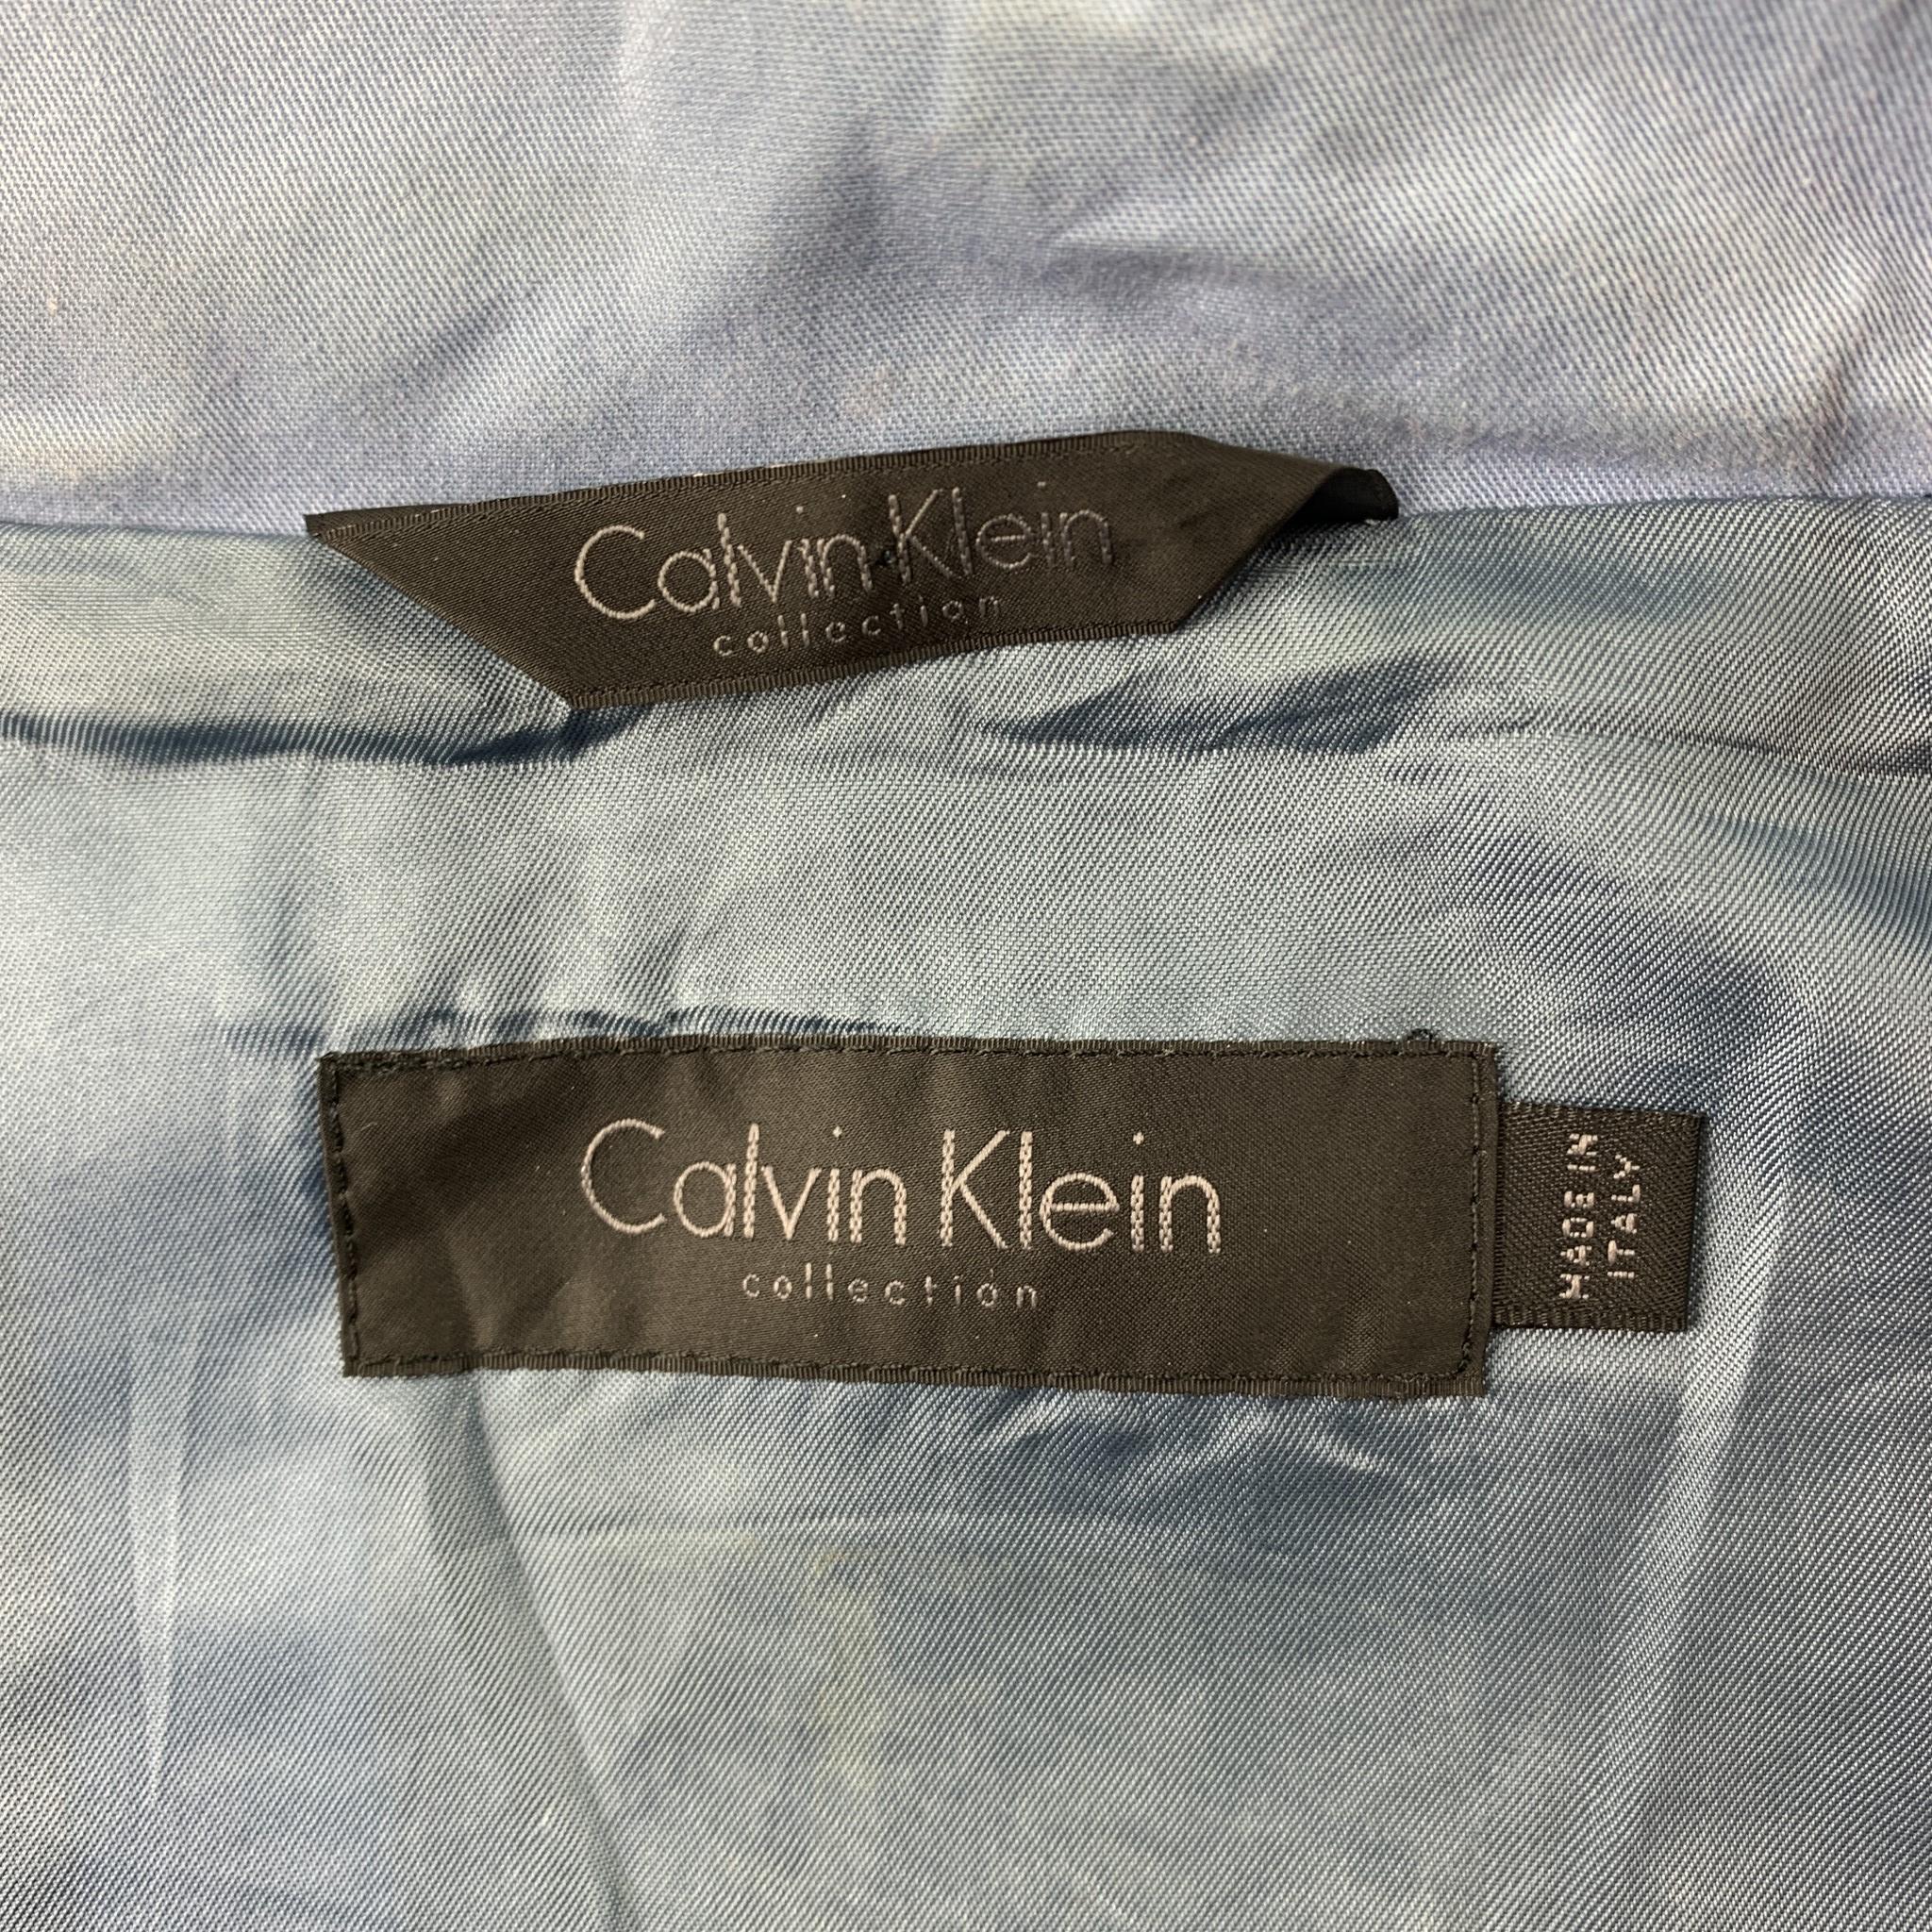 calvin klein collection jacket